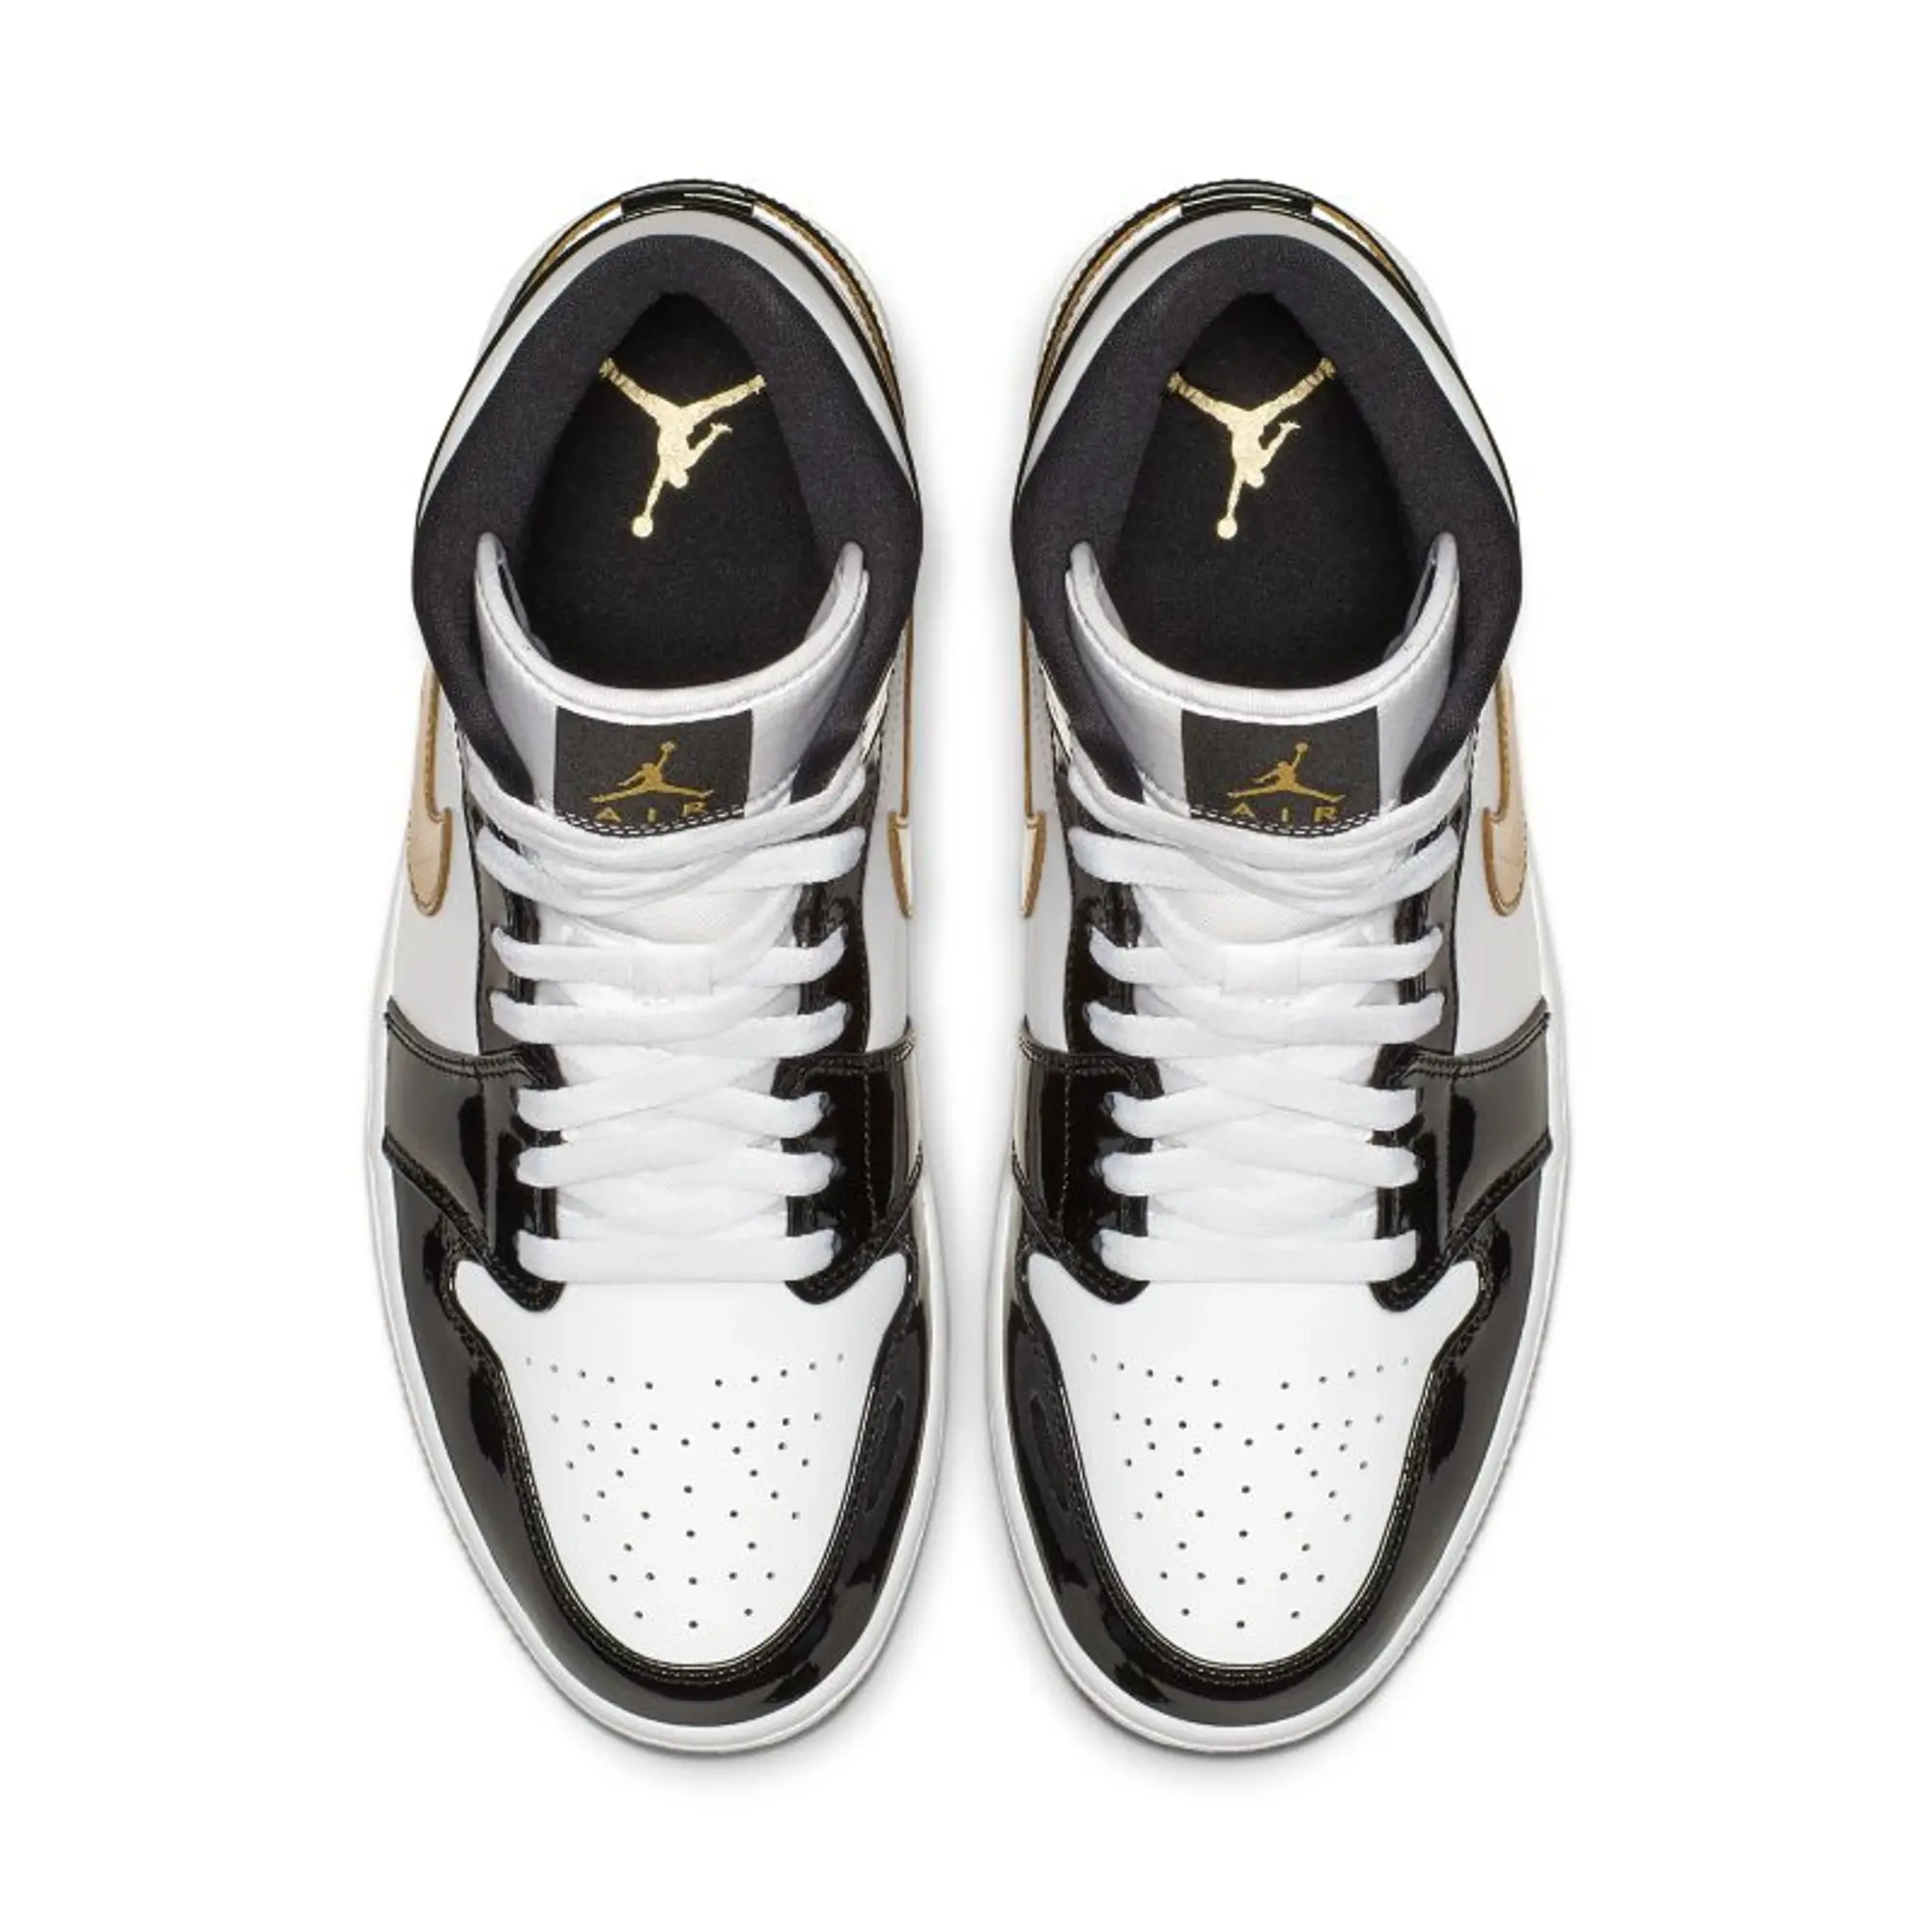 Nike Air Jordan 1 Mid Patent Black White Gold